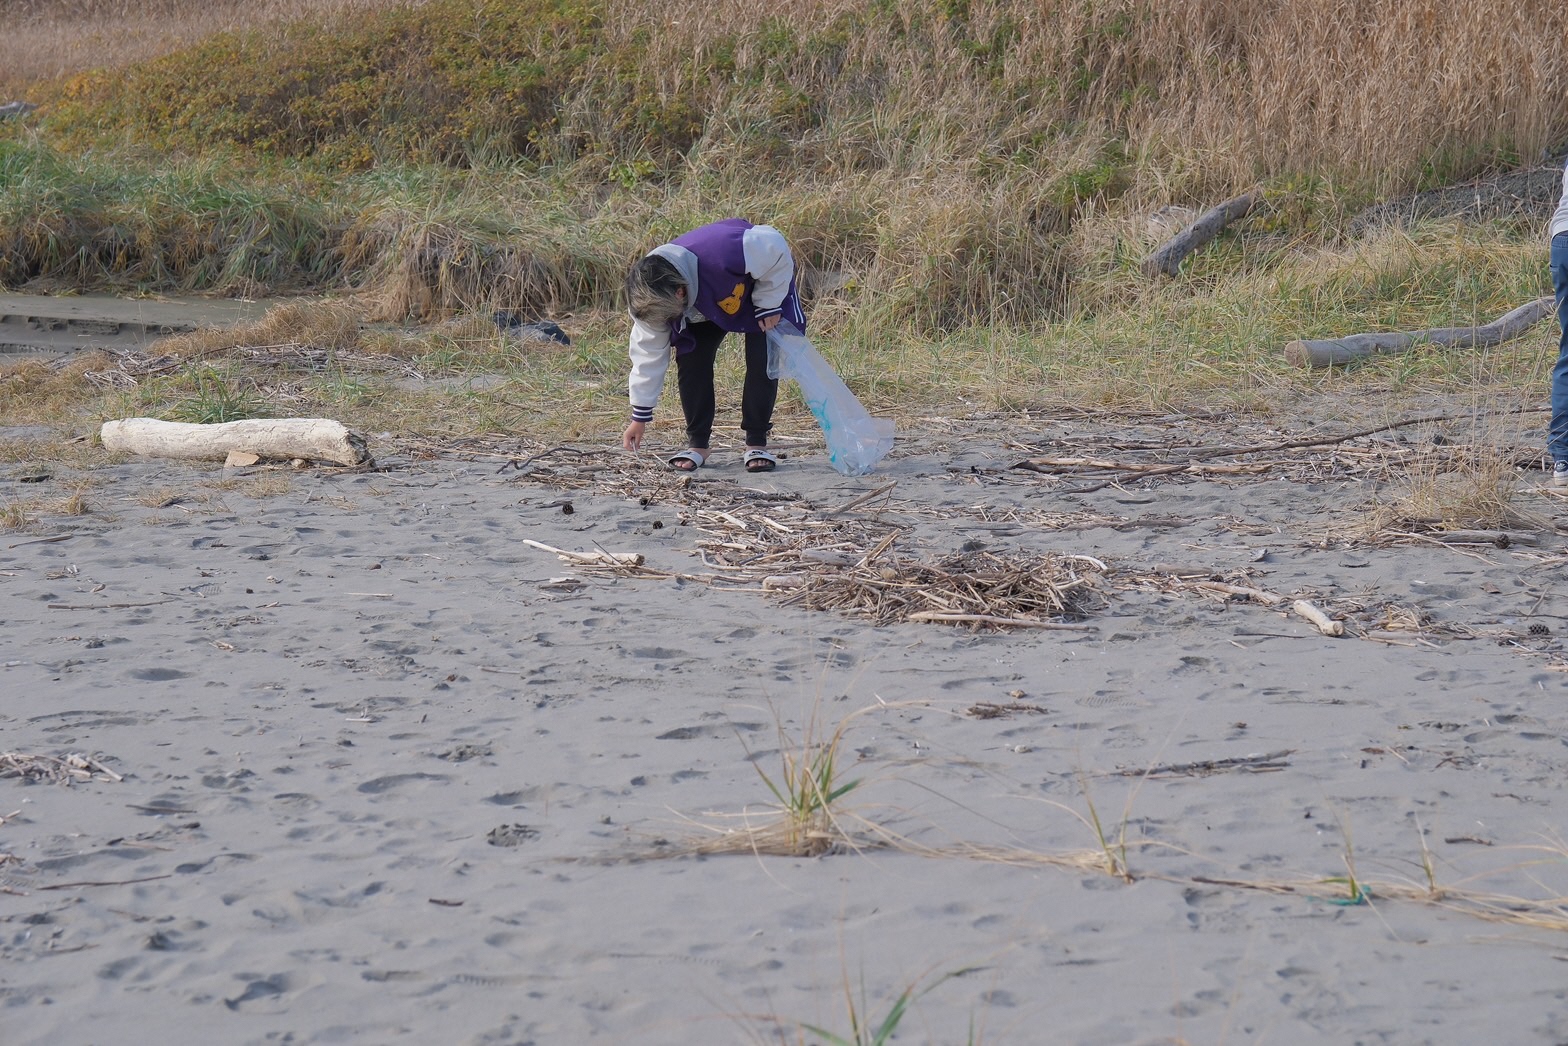 大久喜海岸でボランティア用ごみ袋を手に持ち、素手でごみを拾っている写真